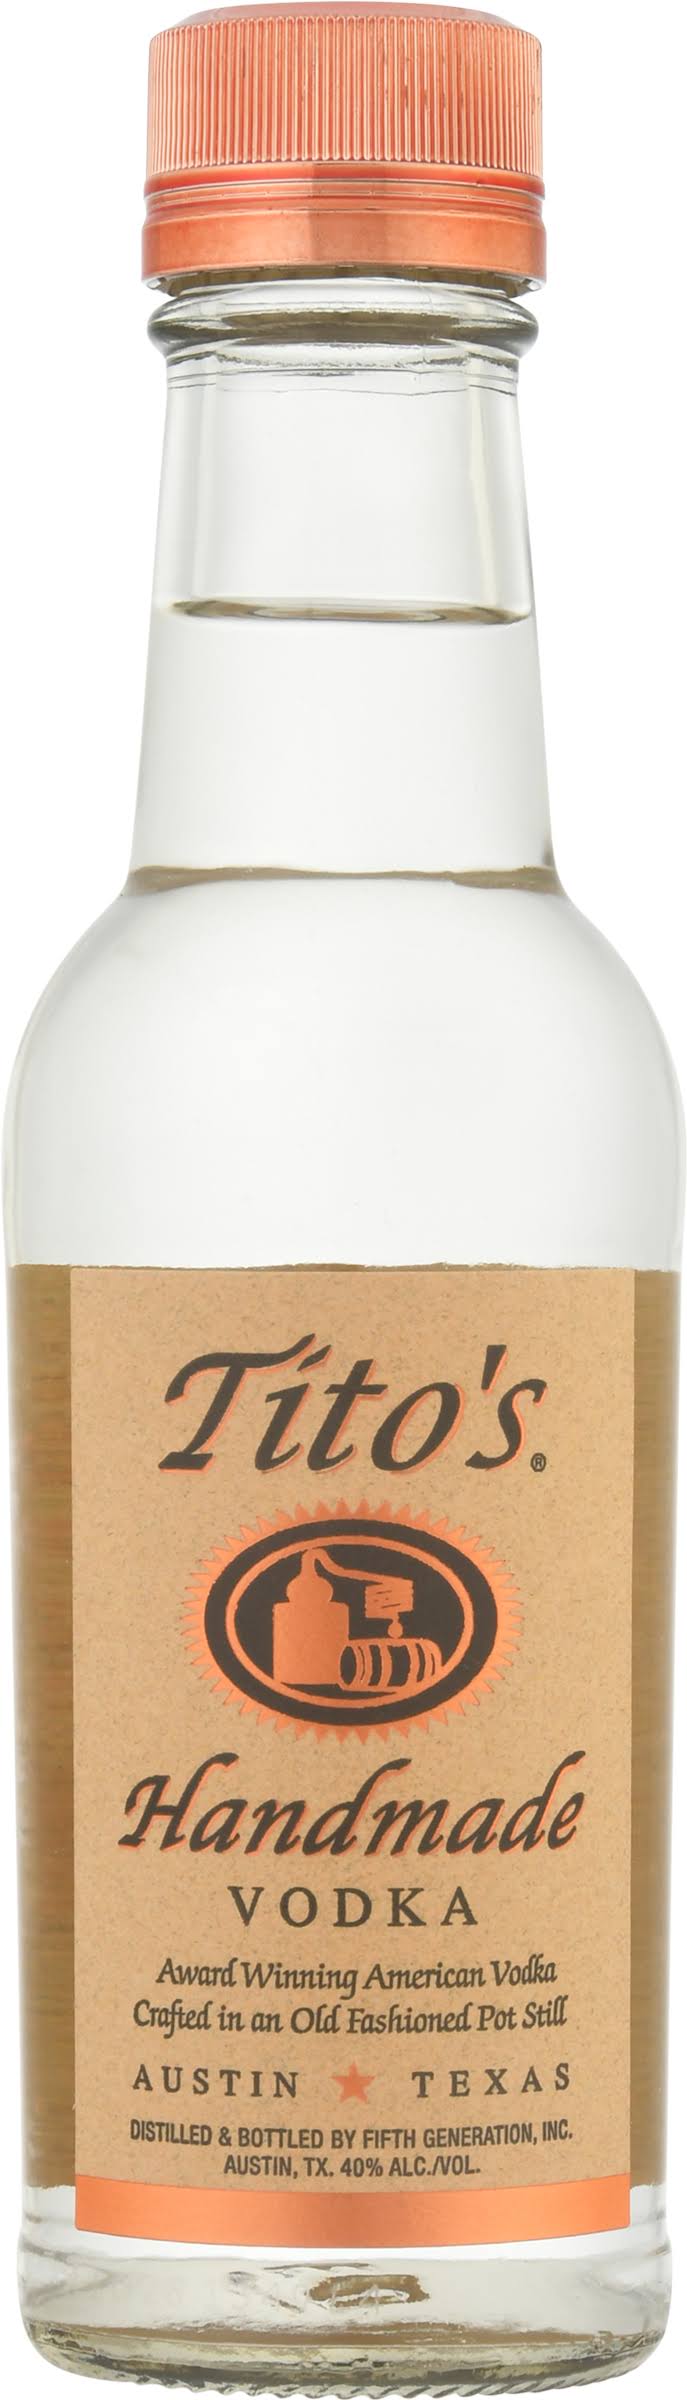 Tito's Handmade Vodka - 200 ml